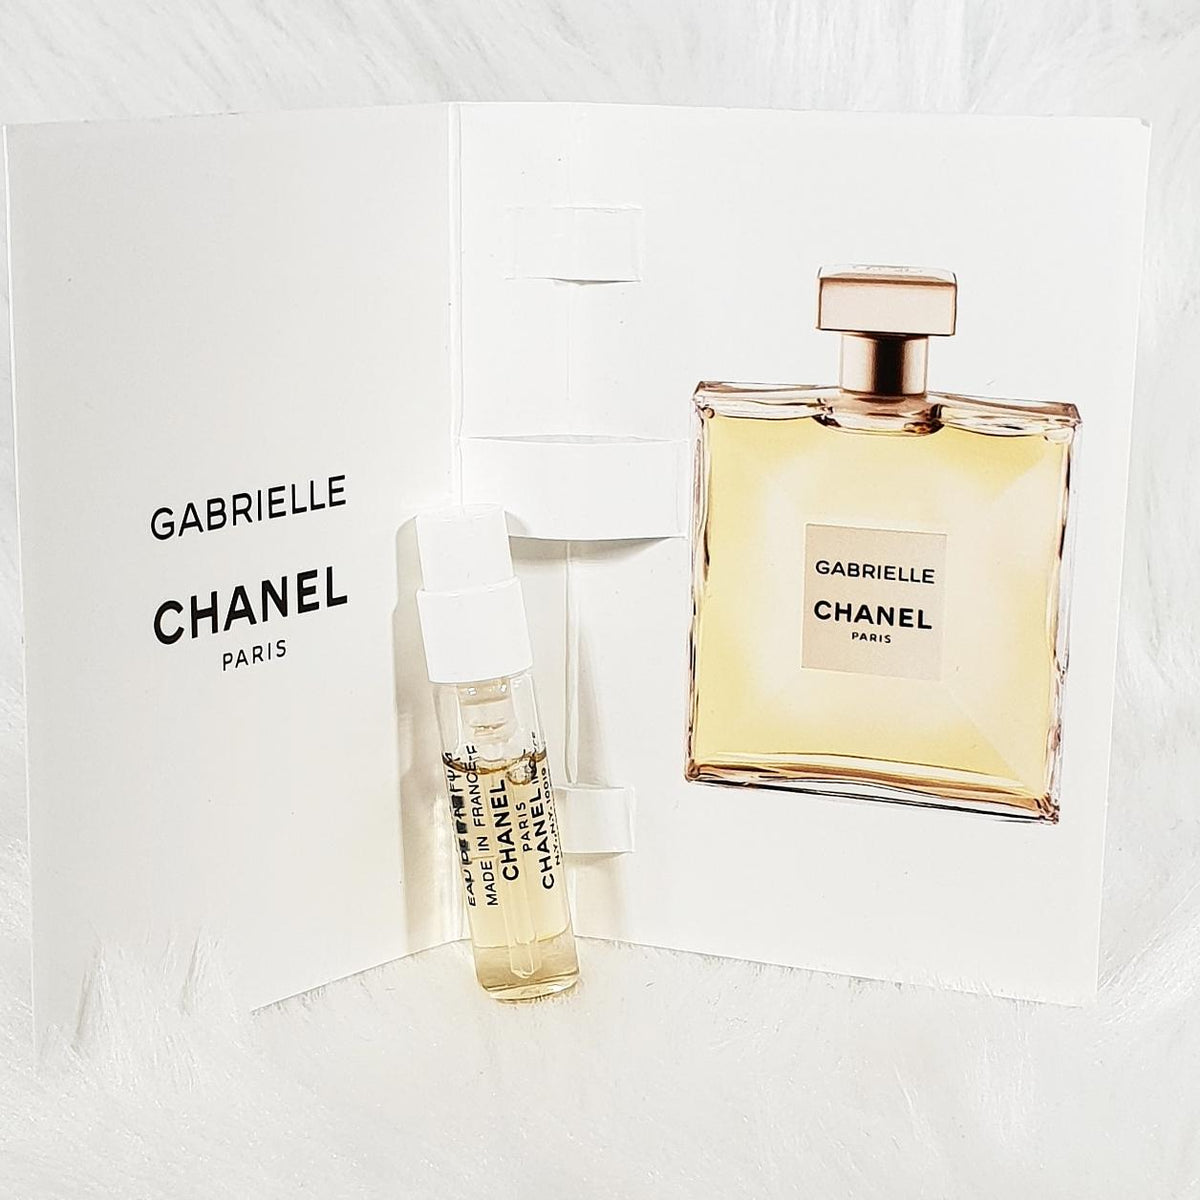 Chanel Gabrielle eau de parfum 1.5 ml perfume sample vial travel